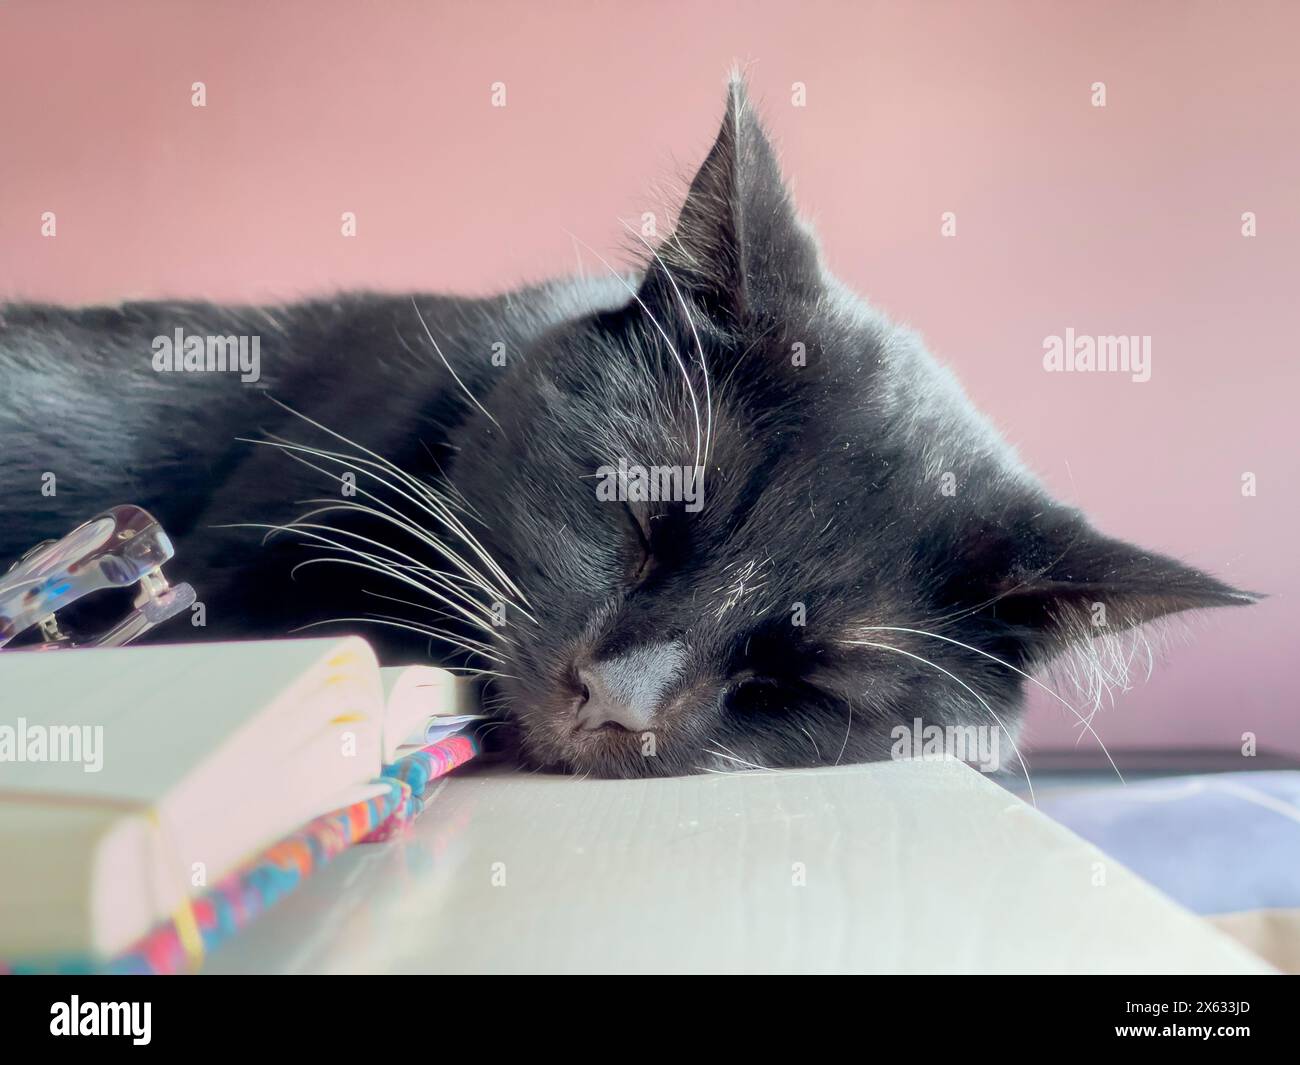 Primo piano di un gatto nero con baffi bianchi che dormono su un libro aperto, su una scrivania. Foto Stock